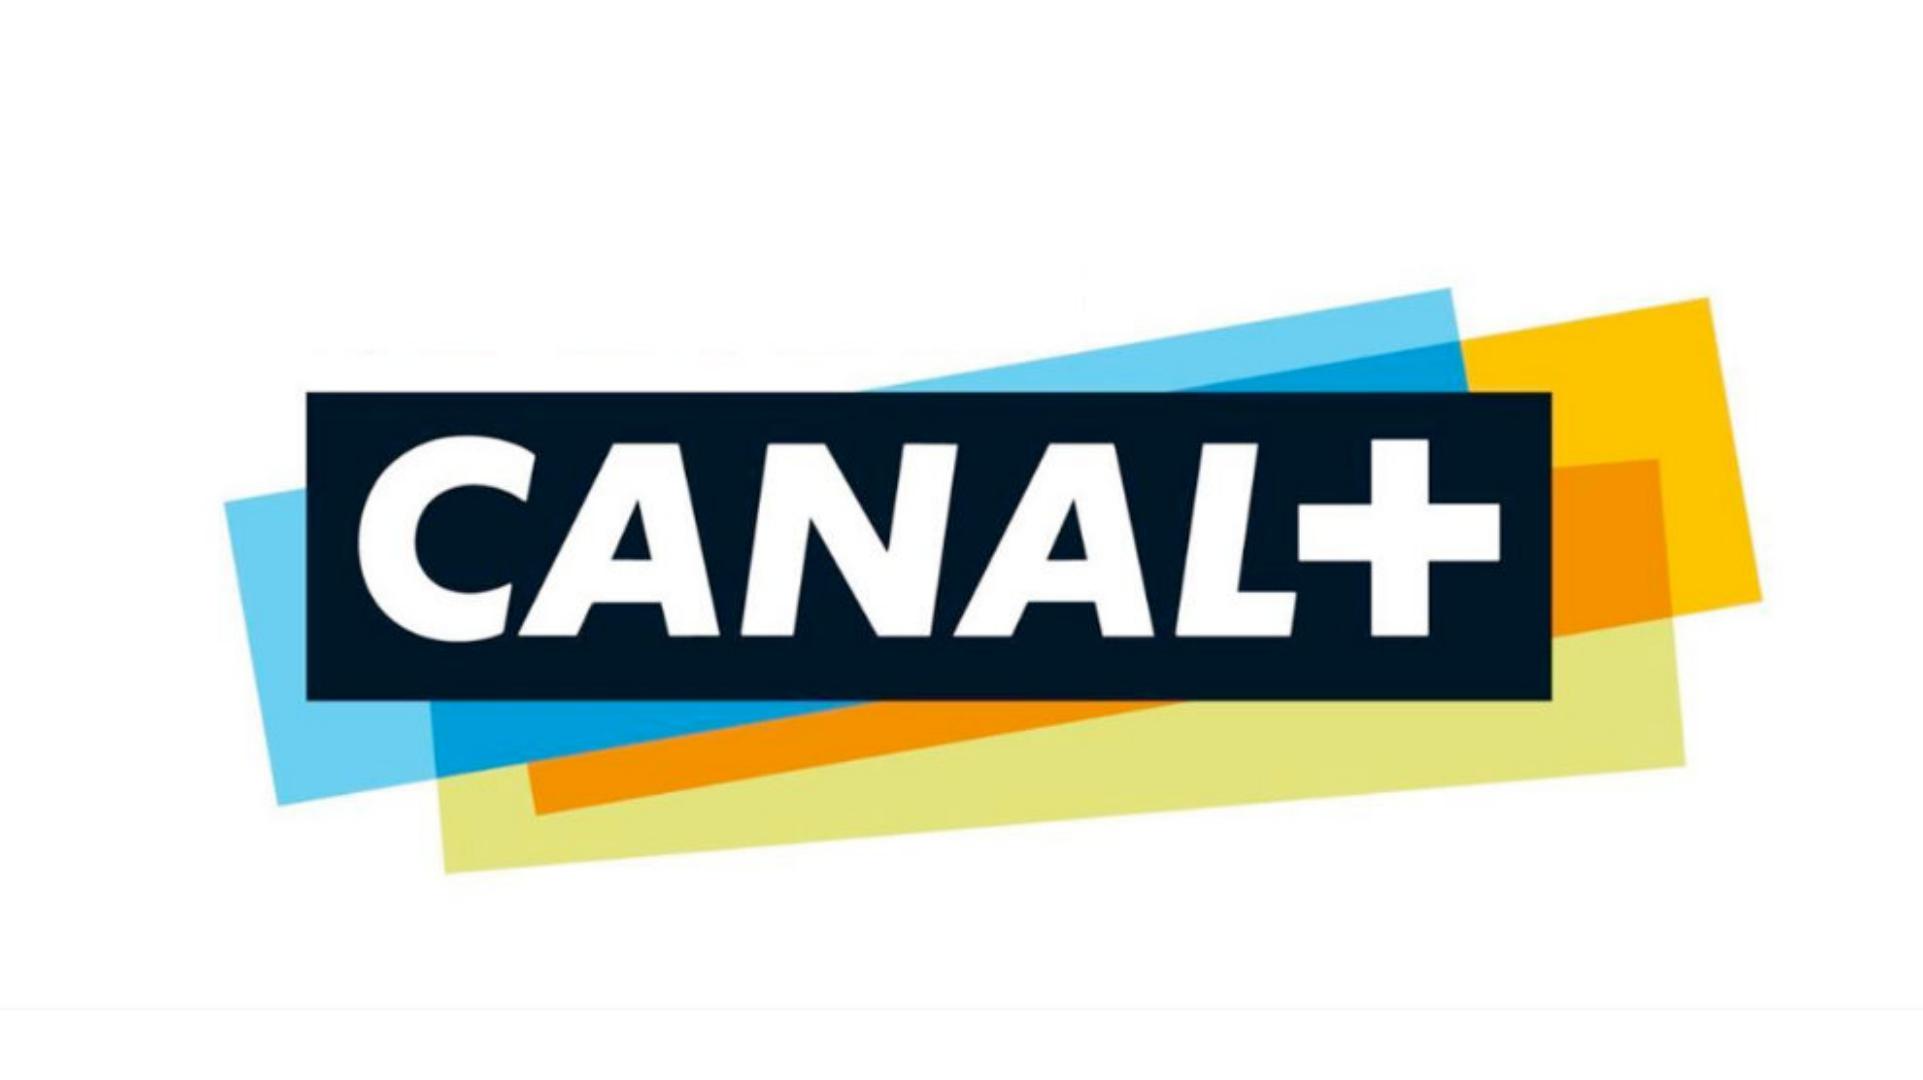 Canal+ s’enrichit de nouvelles chaînes et programmes attractifs